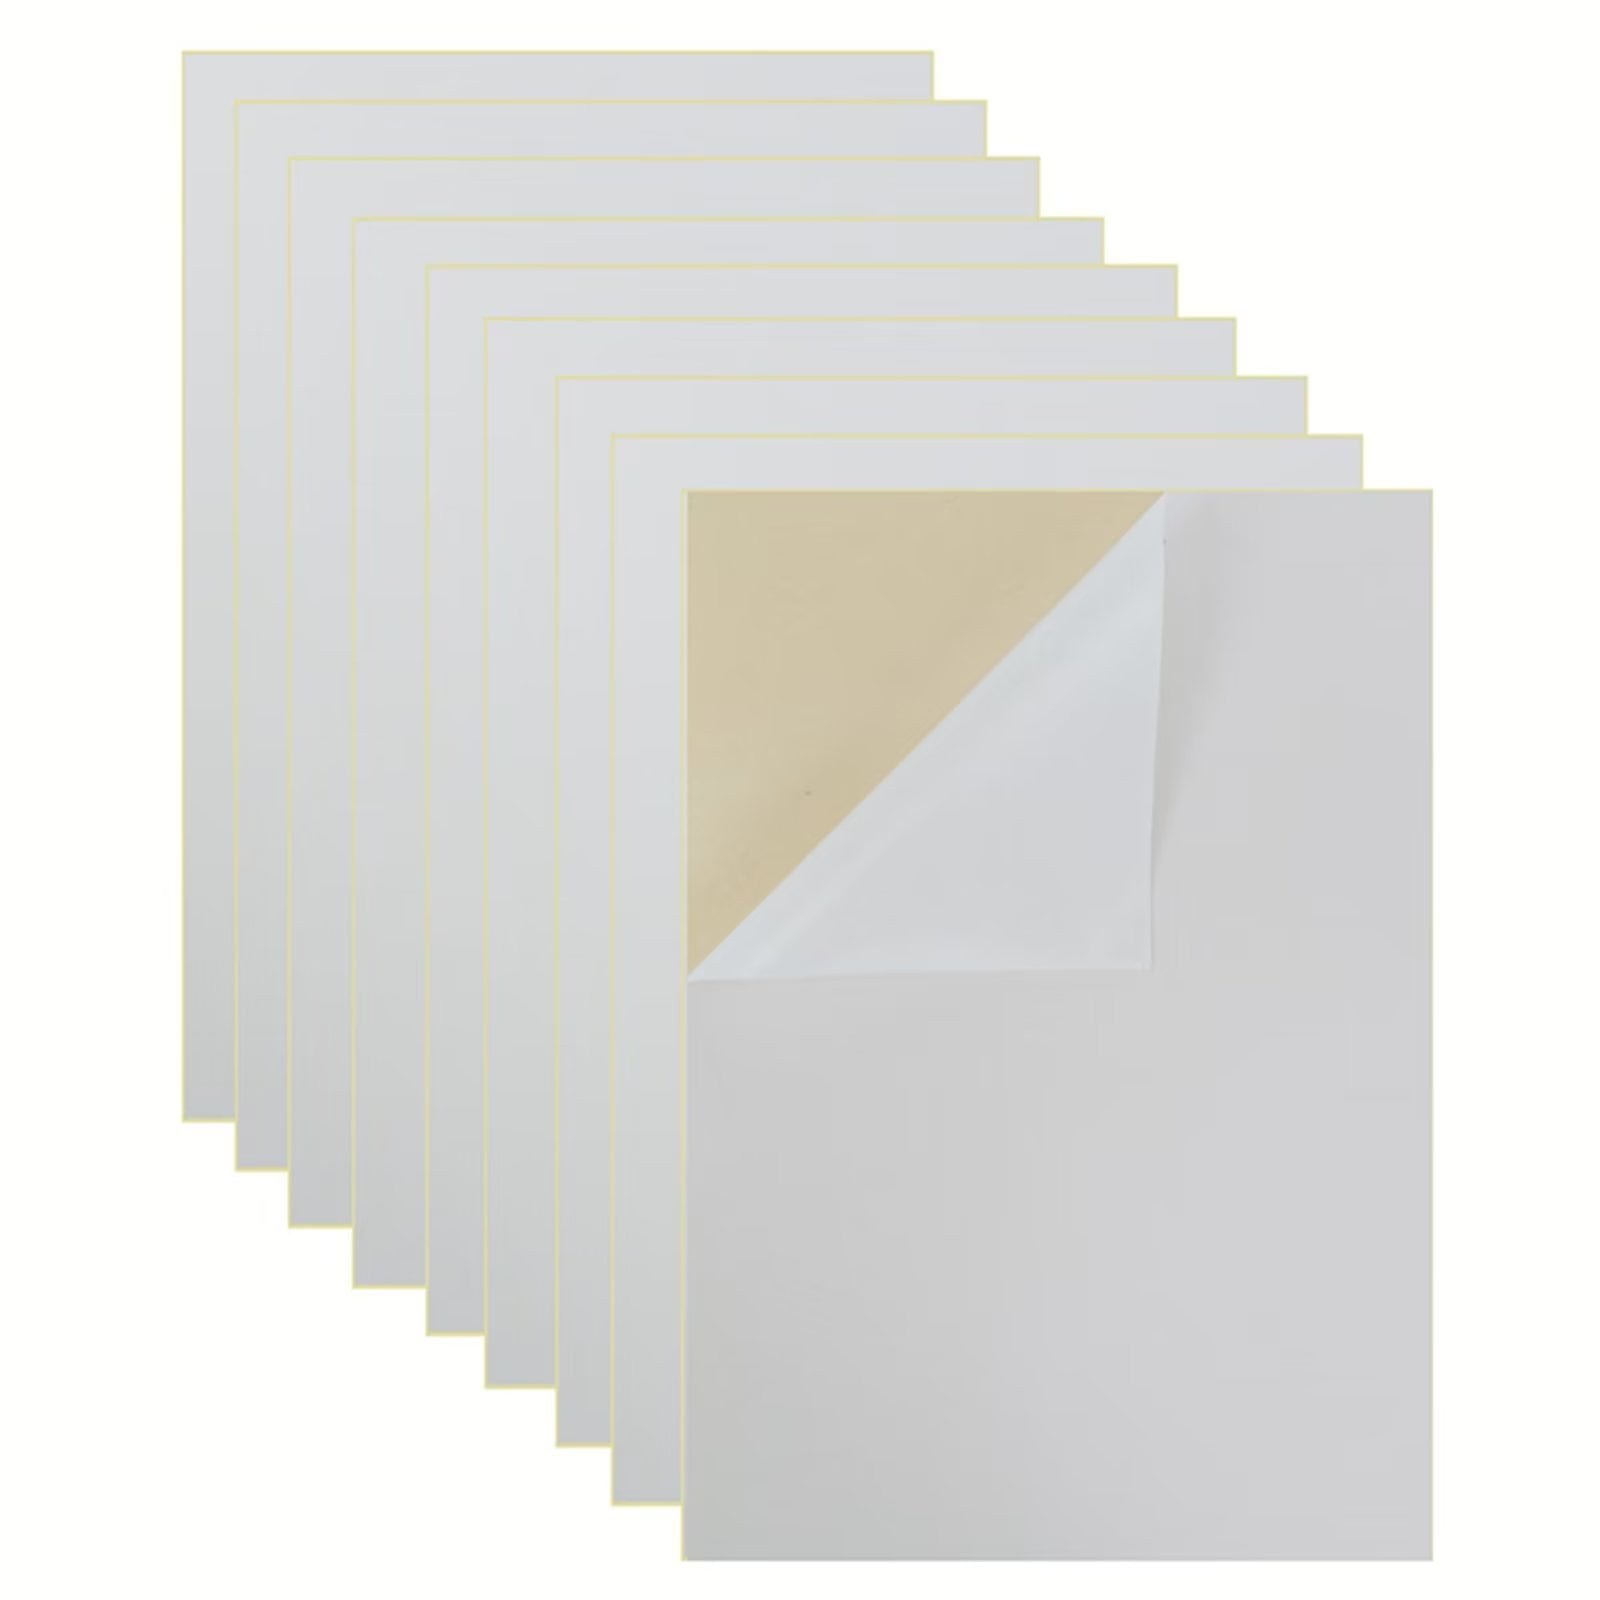 Hershuing 10PCS Self Adhesive Felt Sheet, Felt Sheets with Adhesive  Backing, Peel and Stick Felt Sheets Adhesive Backed, A4 Size Felt Adhesive  Sheet (8.3 x 11.8, Grey) 